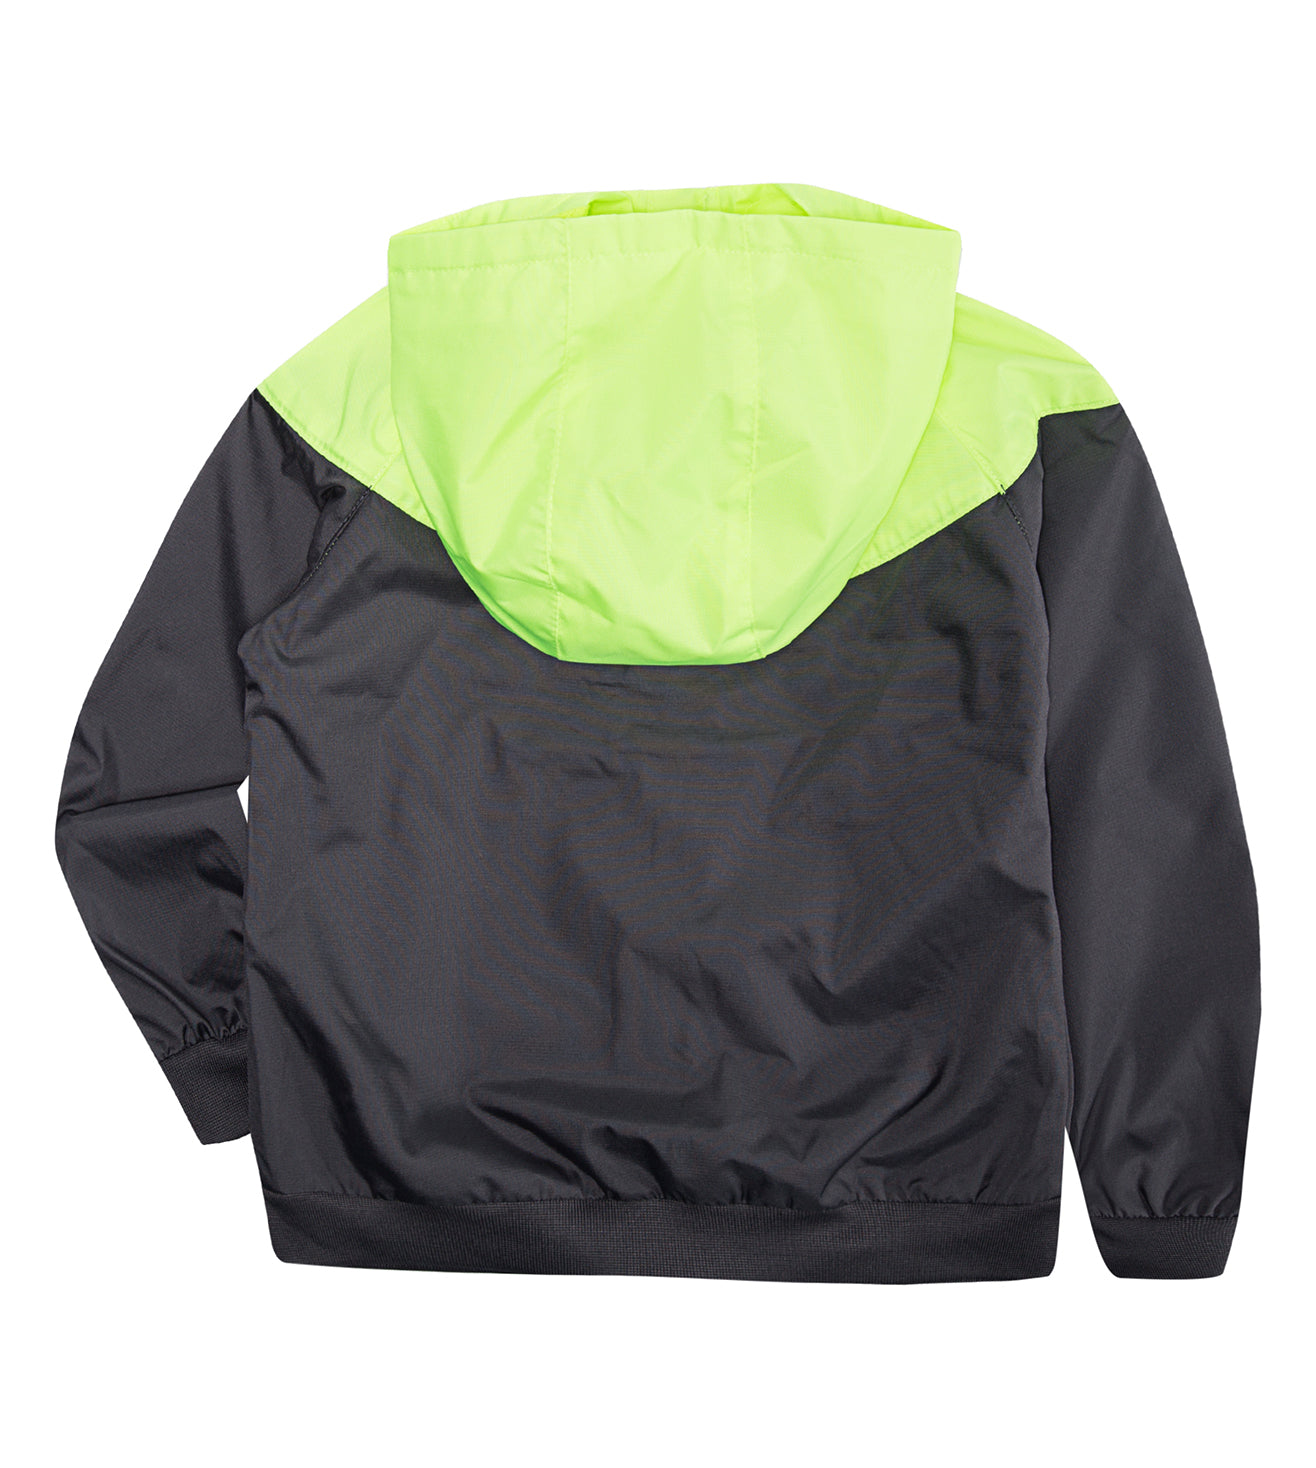 Nike Sportswear Windrunner Jacket Sweatshirt Nike   